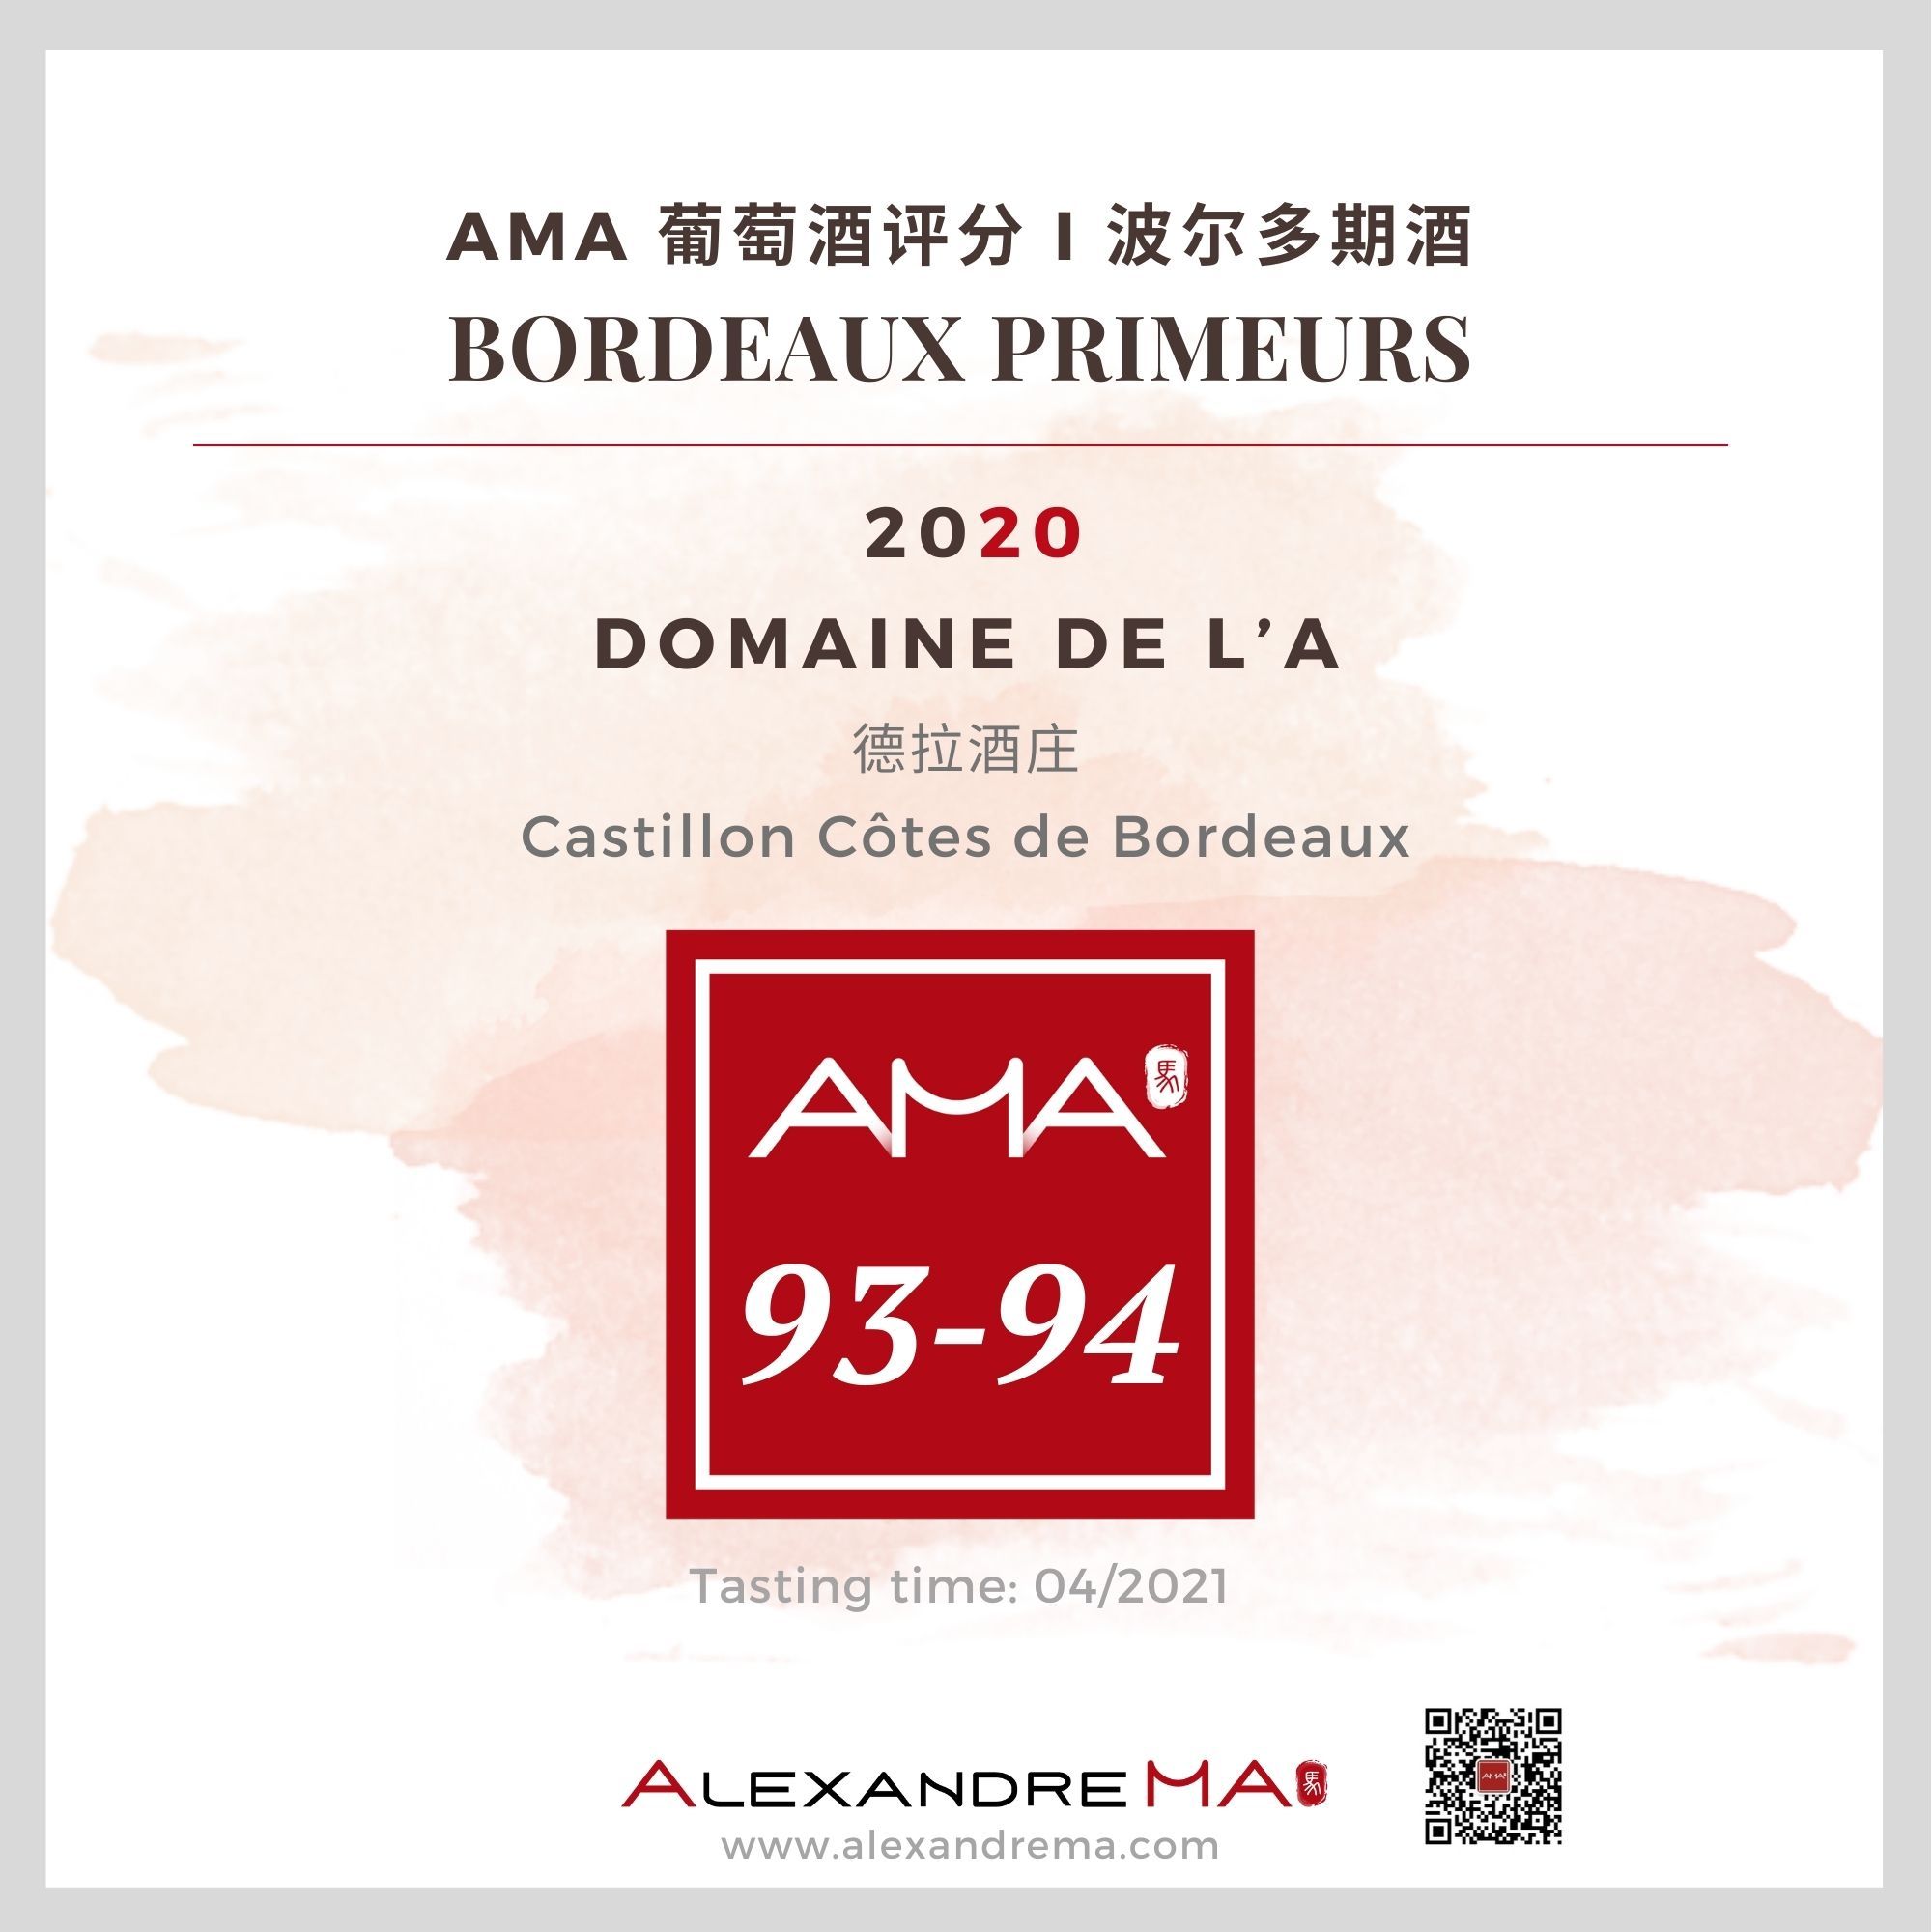 Domaine de l’A 2020 德拉酒庄 - Alexandre Ma